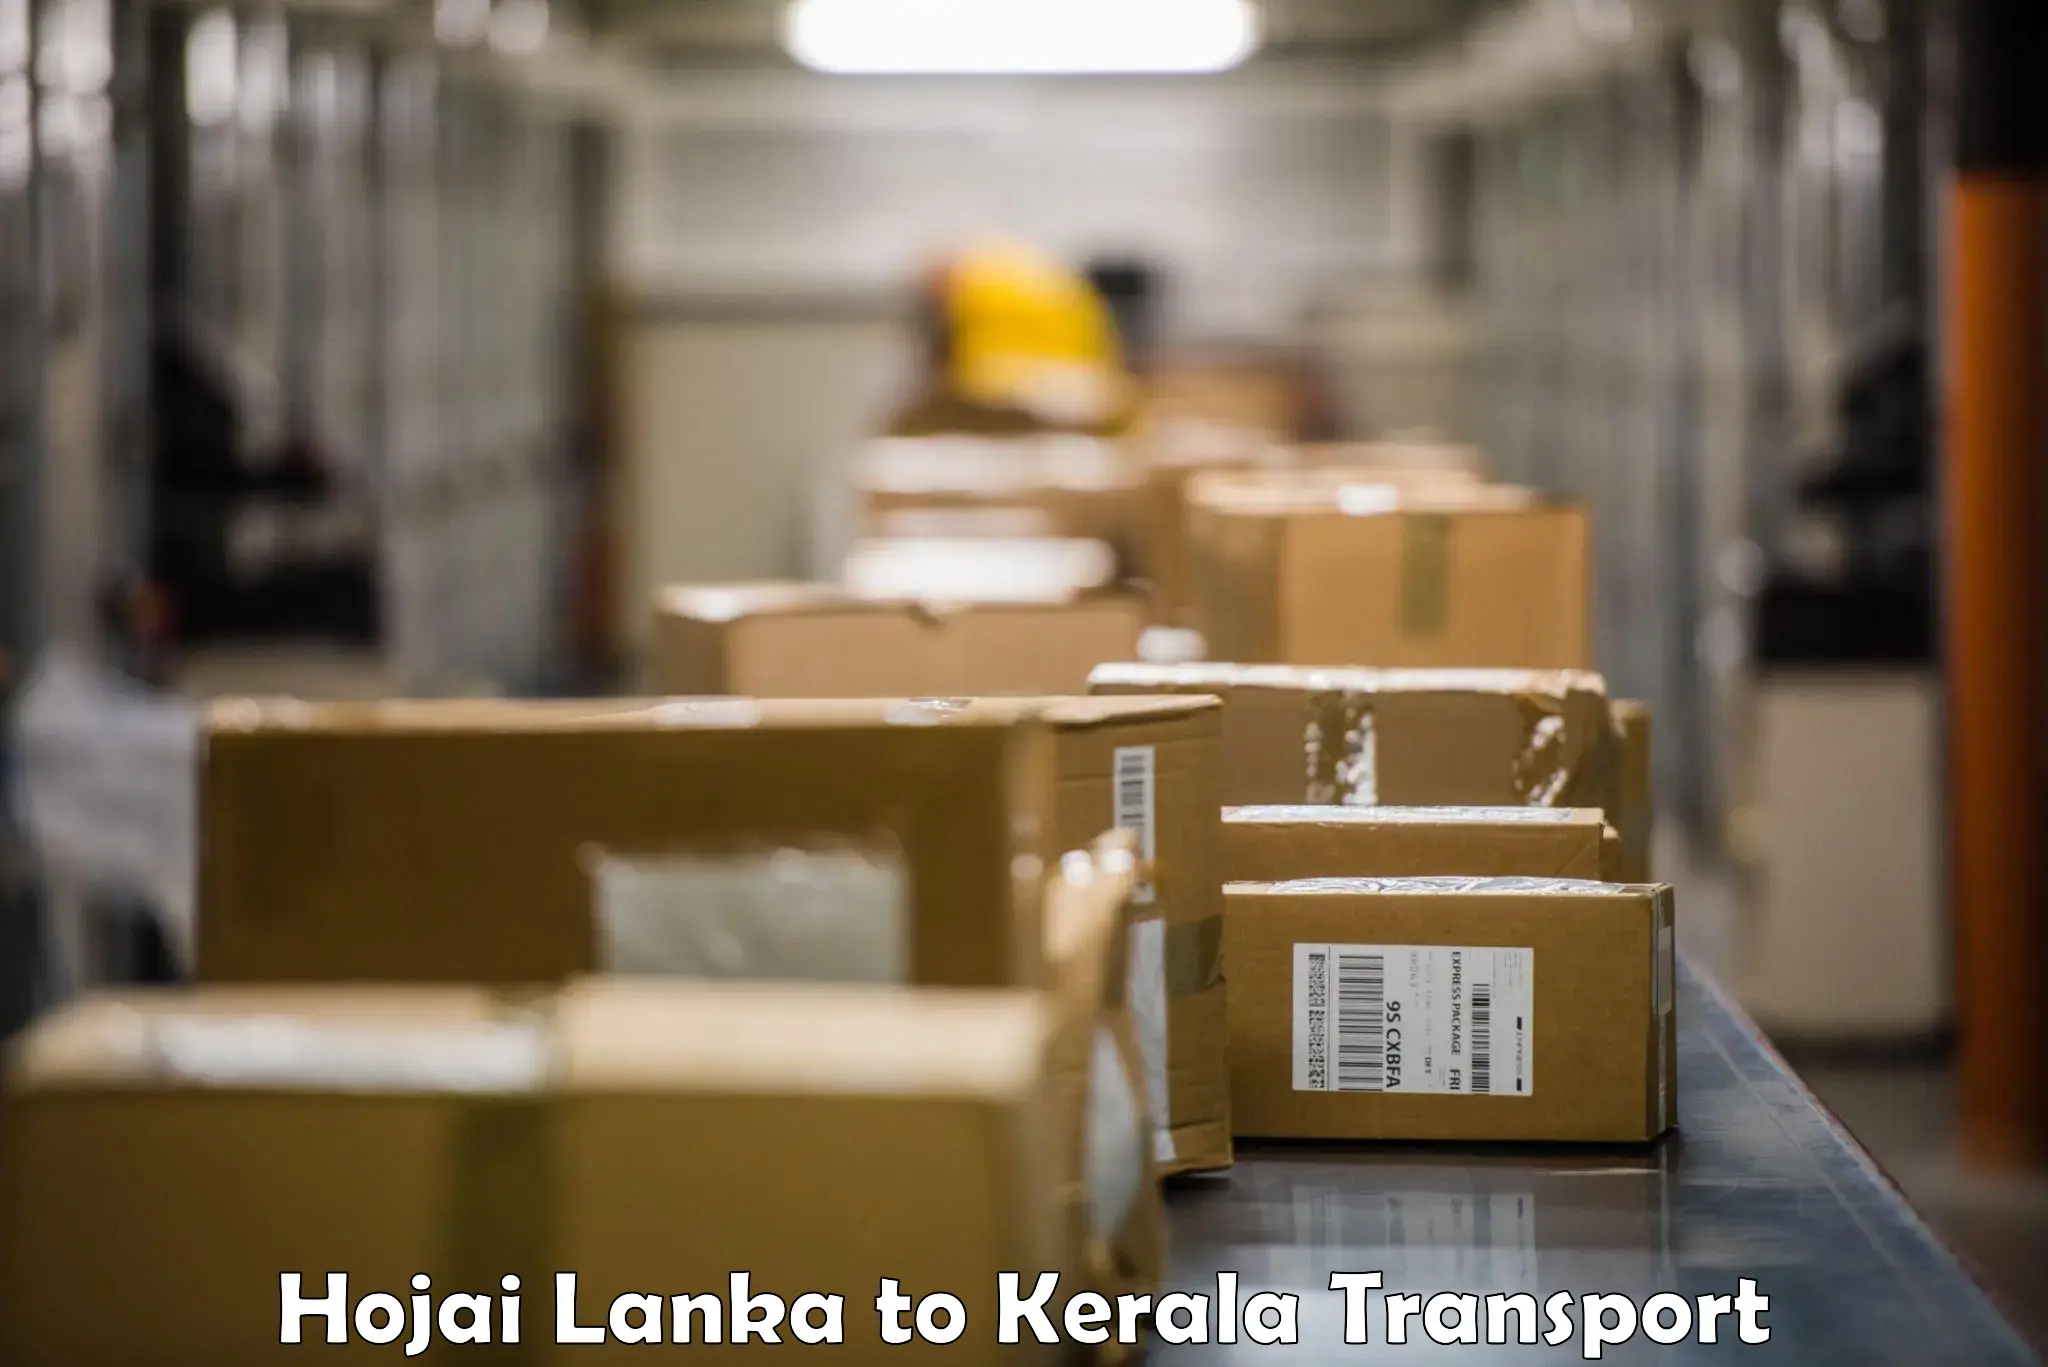 Daily transport service Hojai Lanka to Kanhangad